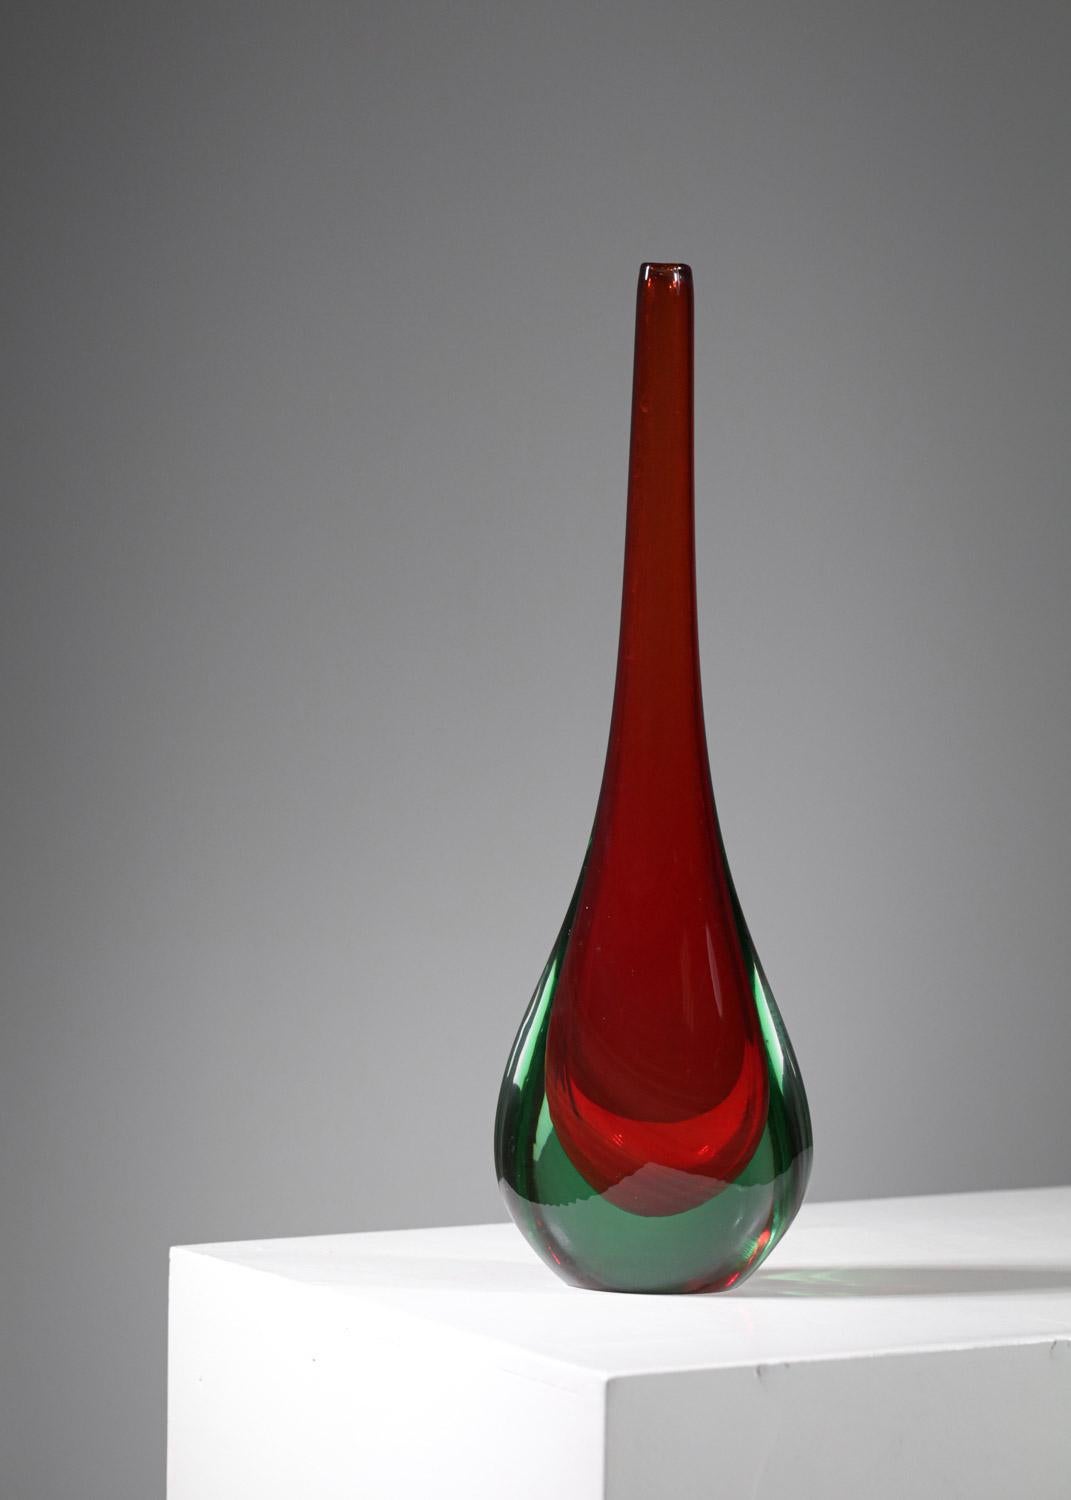 Très joli vase en verre soufflé de Murano des années 60. Excellent travail artisanal avec une belle nuance de lumière rouge qui met en valeur le design simple et épuré de la goutte de vase. Très bon état vintage (voir photos).